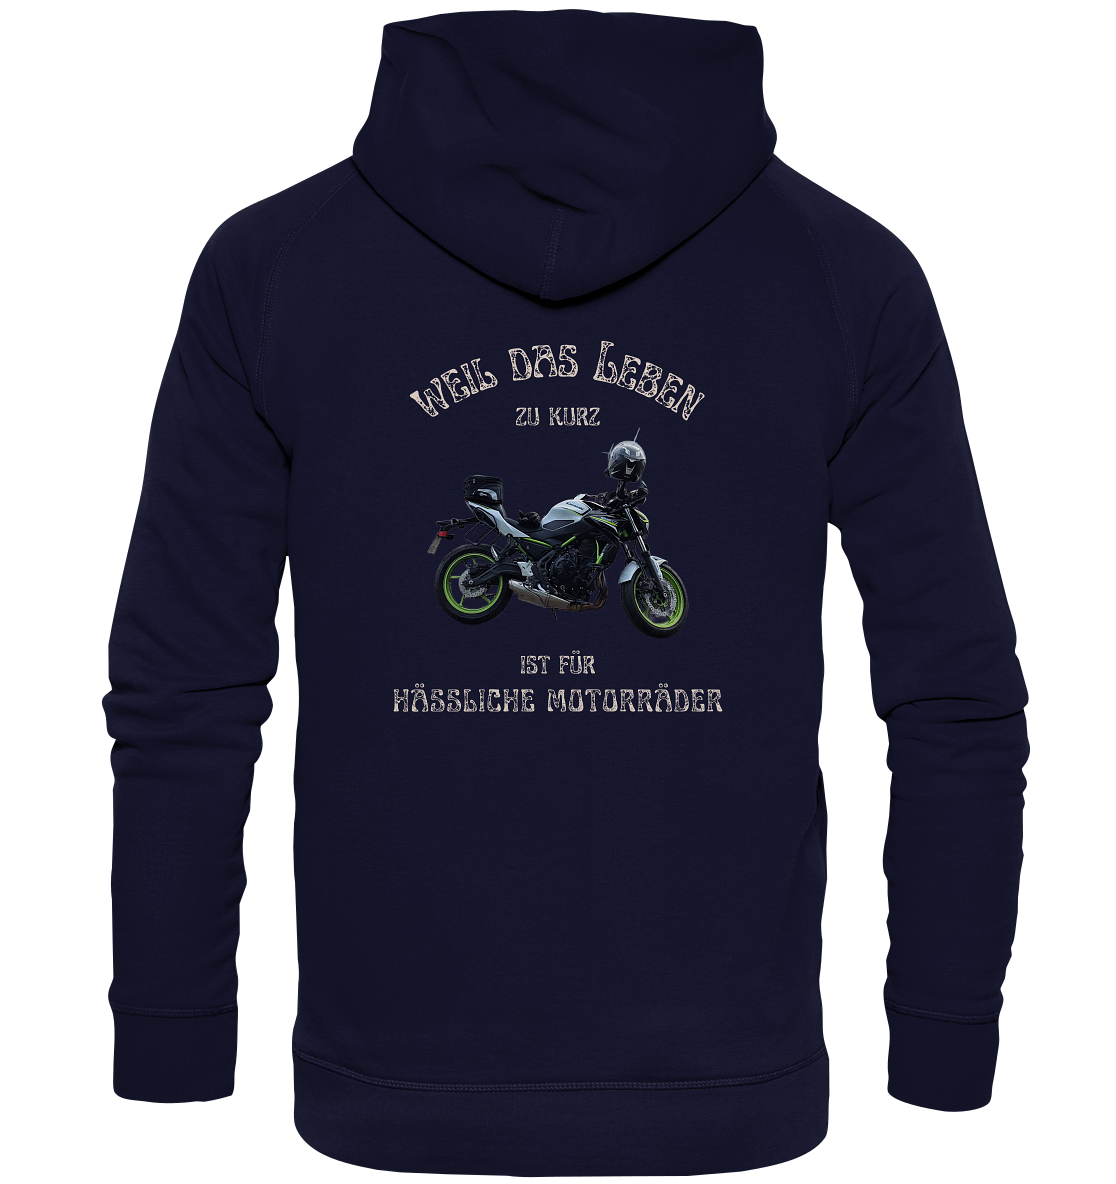 "Weil das Leben zu kurz ist für hässliche Motorräder" _ für Angelika | individualisierter Hoodie mit Motorrad-Foto und Spruch in hellem Design